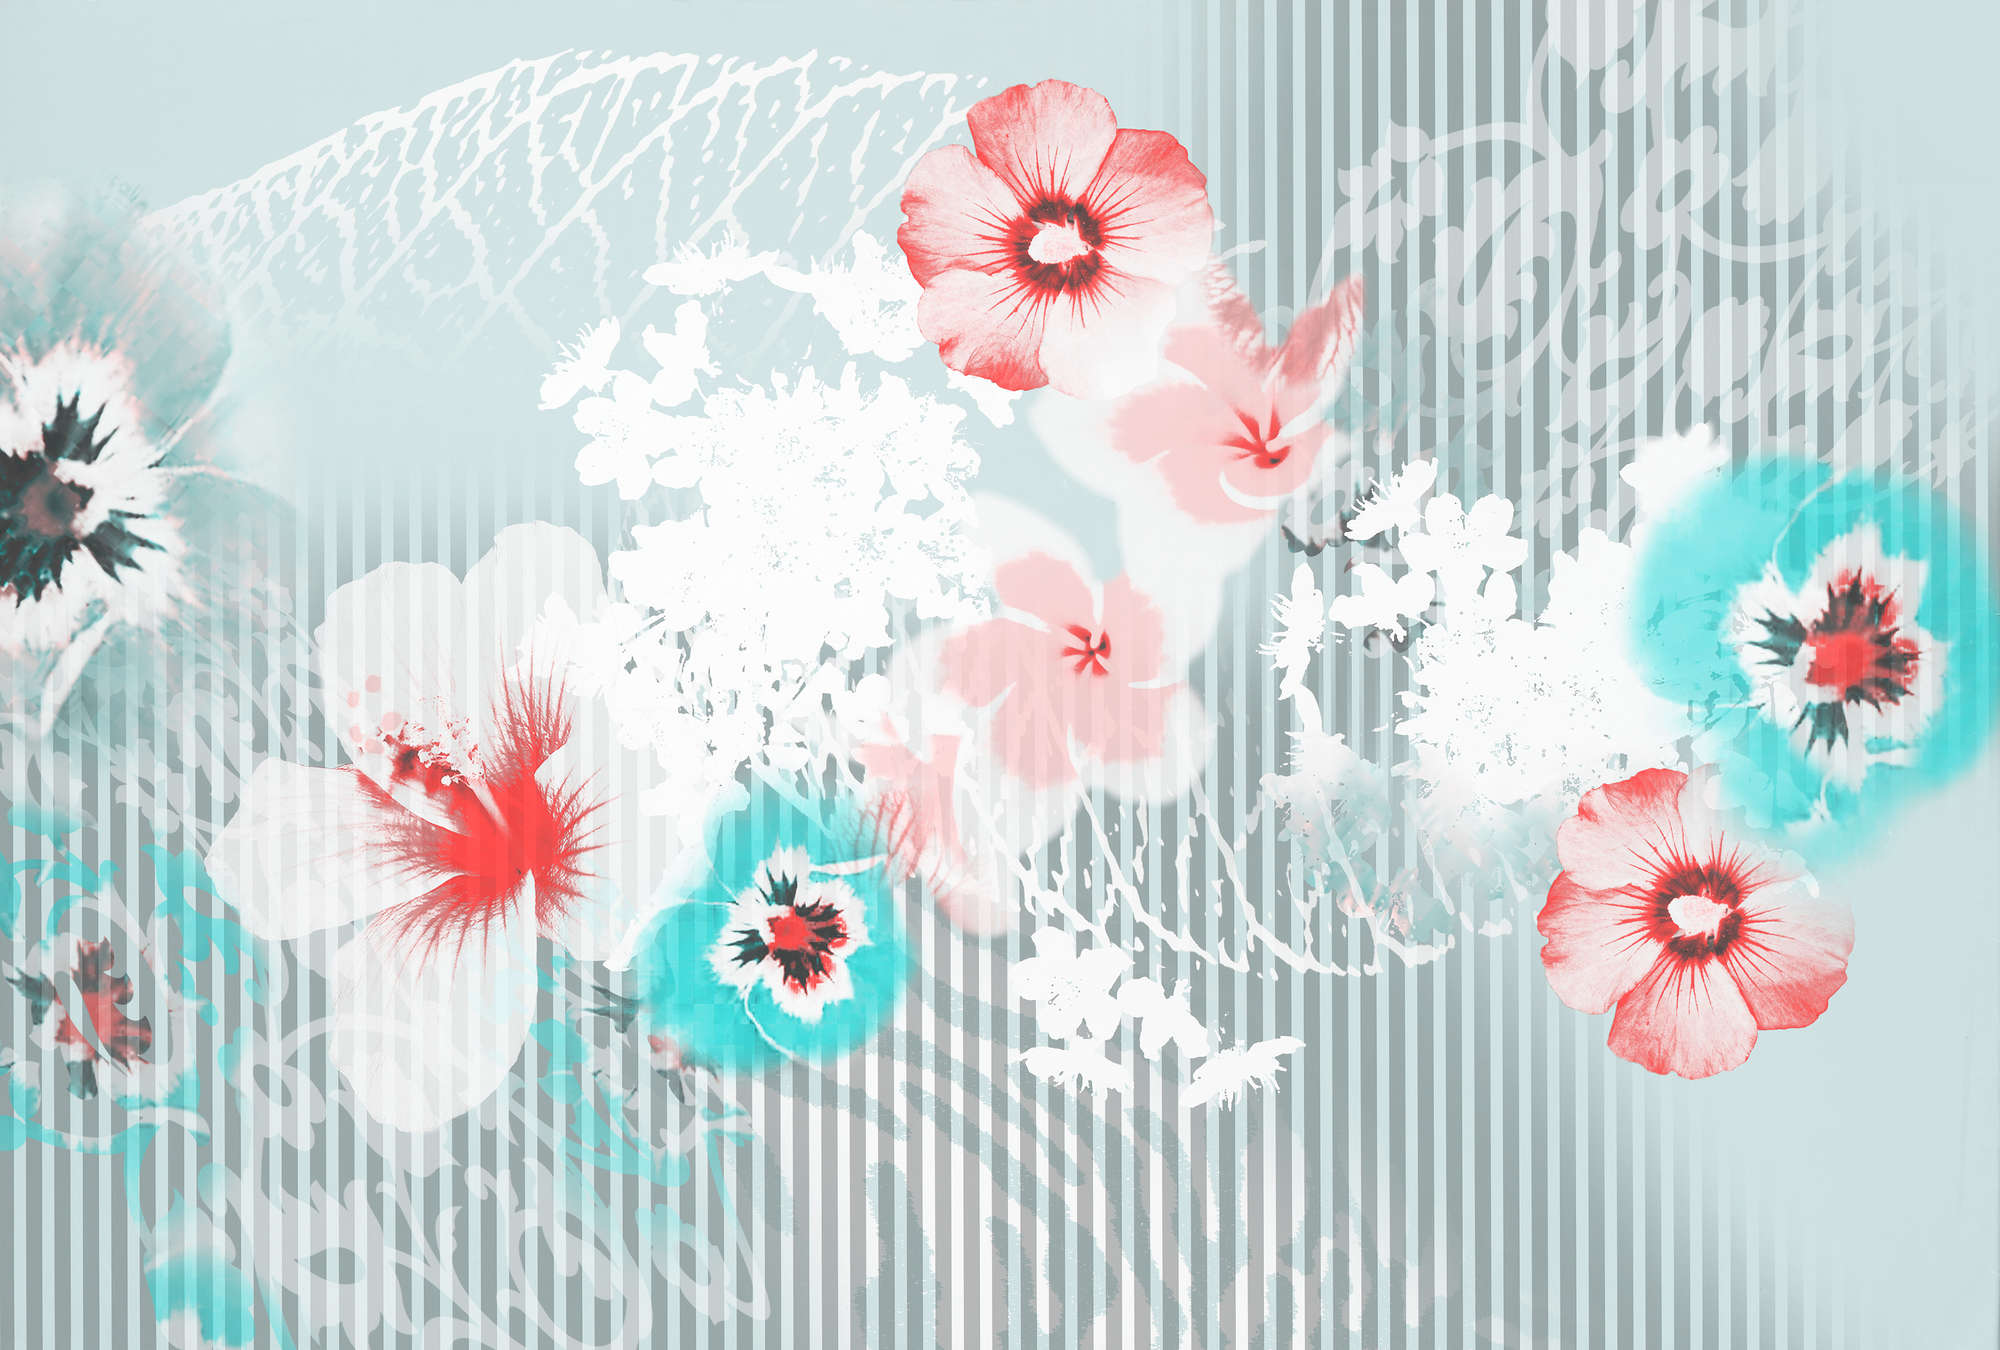             Fototapete Blütendesign, grafisch & natürlich – Blau, Grau, Rosa
        